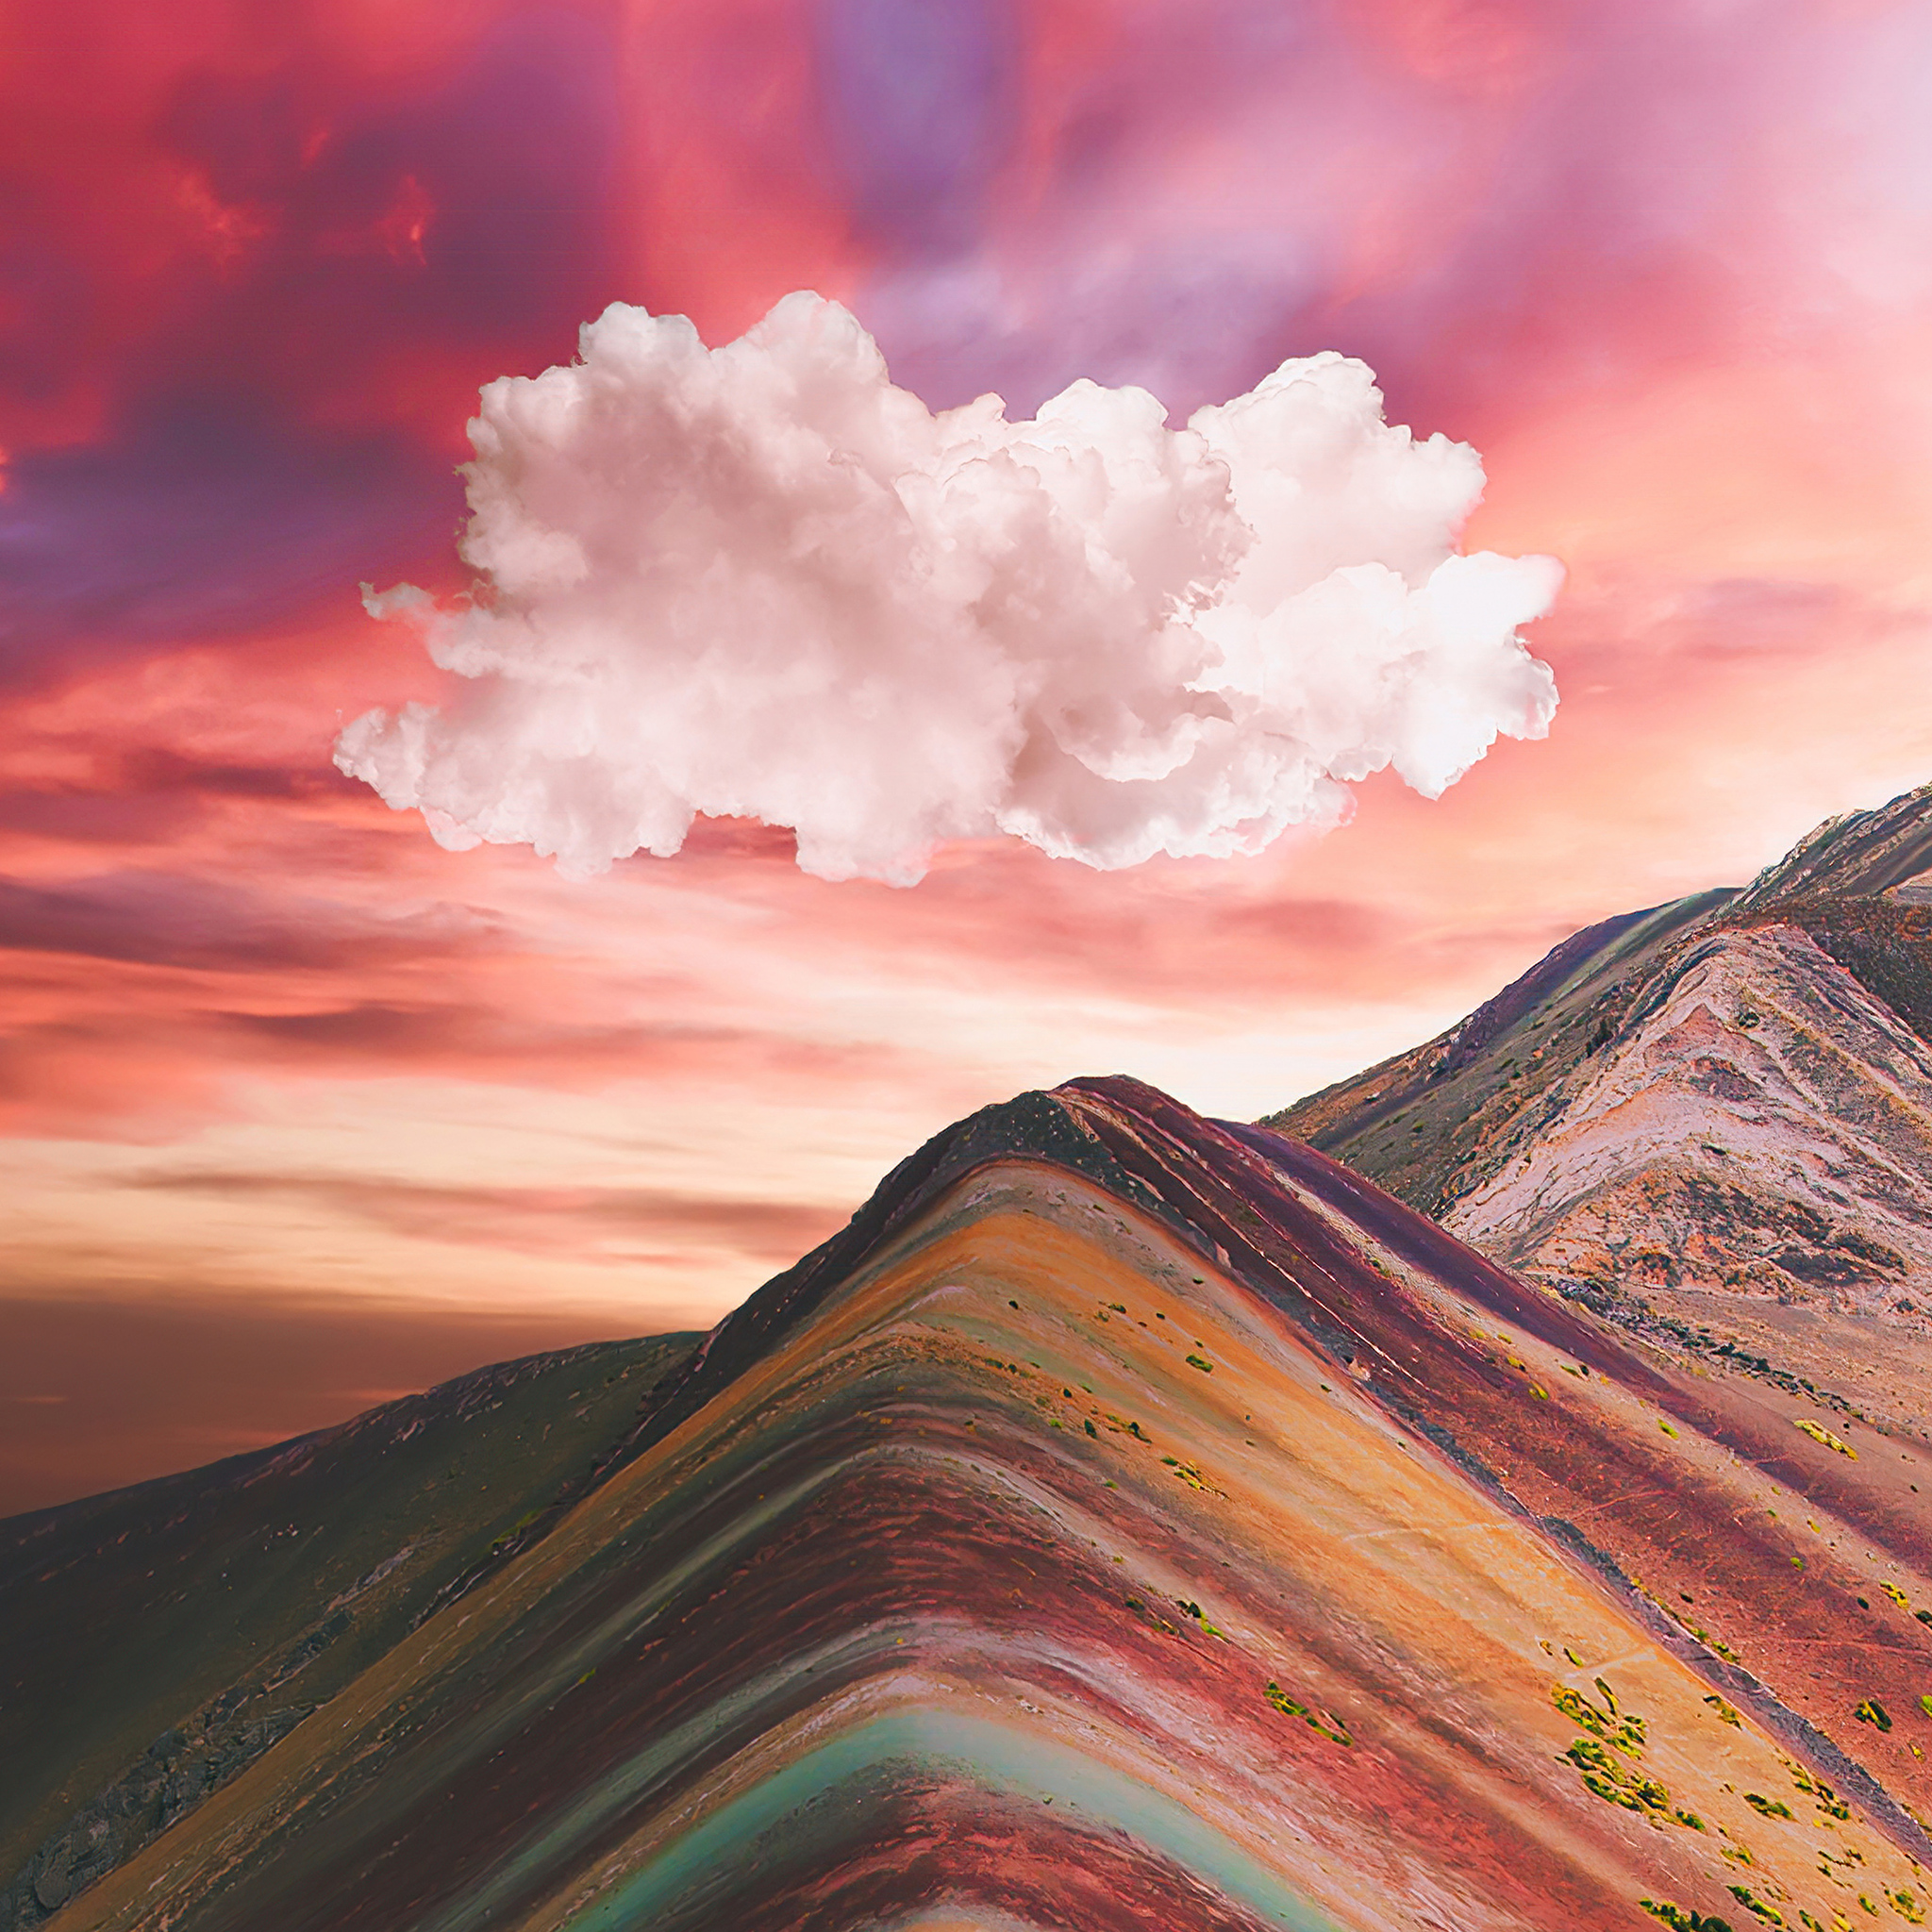 Đám mây trên núi cầu vồng Vinicunca là một phần không thể thiếu của bức tranh đẹp tuyệt vời này. Khi xem hình ảnh này, bạn sẽ cảm nhận được một sự yên bình và cân bằng của thiên nhiên.